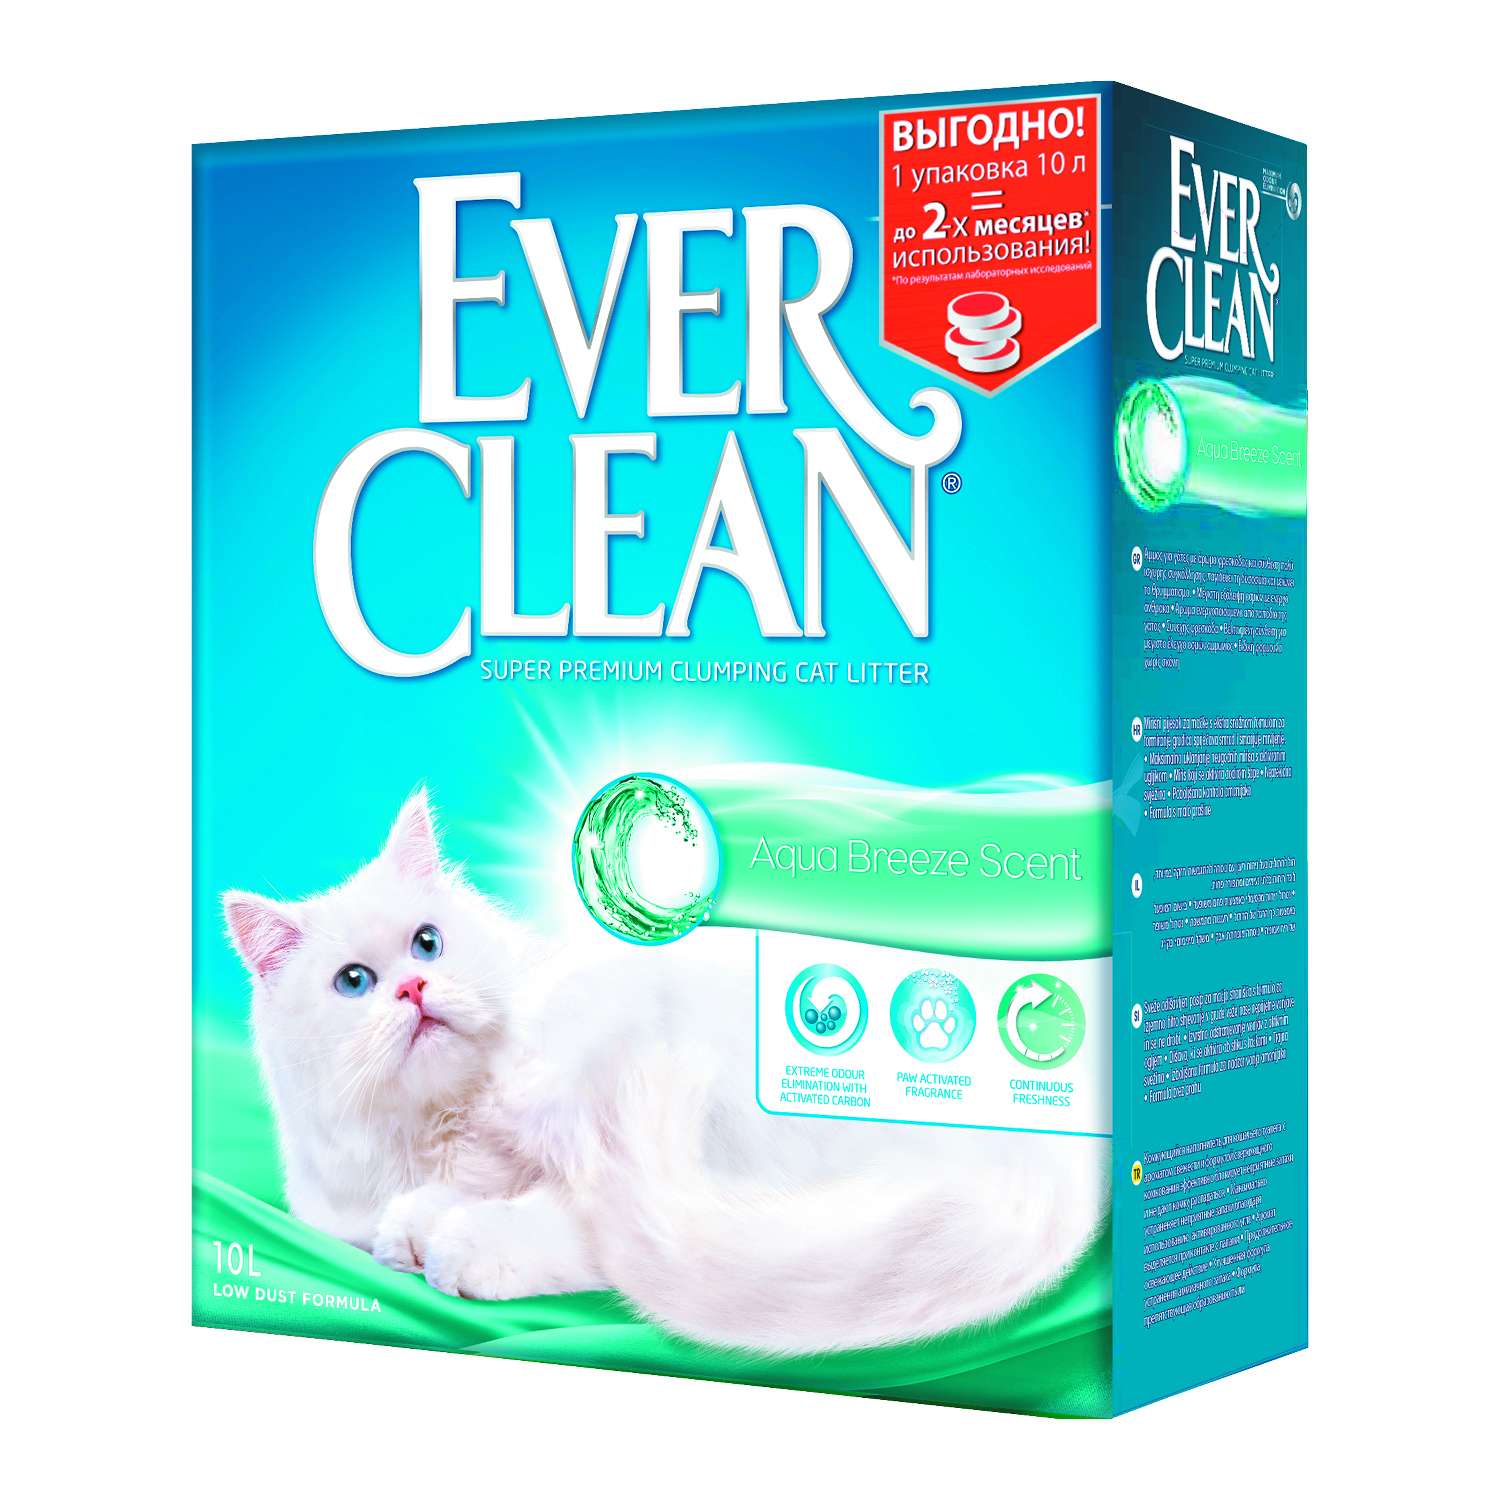 Наполнитель для кошек EVER CLEAN Aqua Breeze Scent аромат морской свежести комкующийся 10л - фото 1